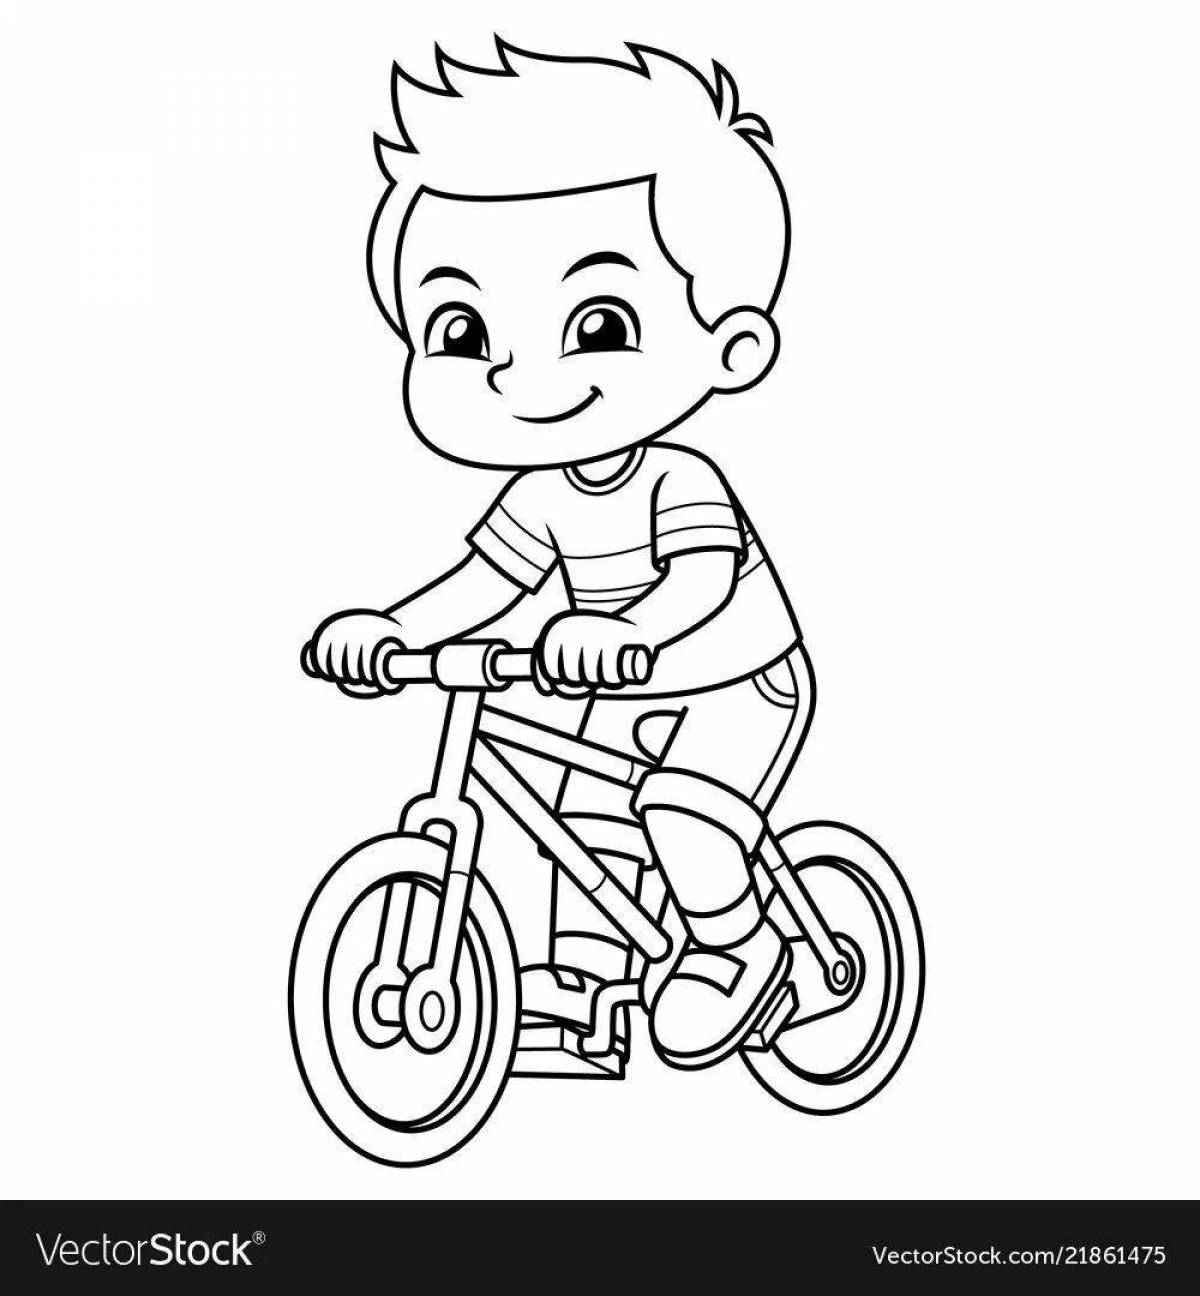 Мальчик на велосипеде раскраска